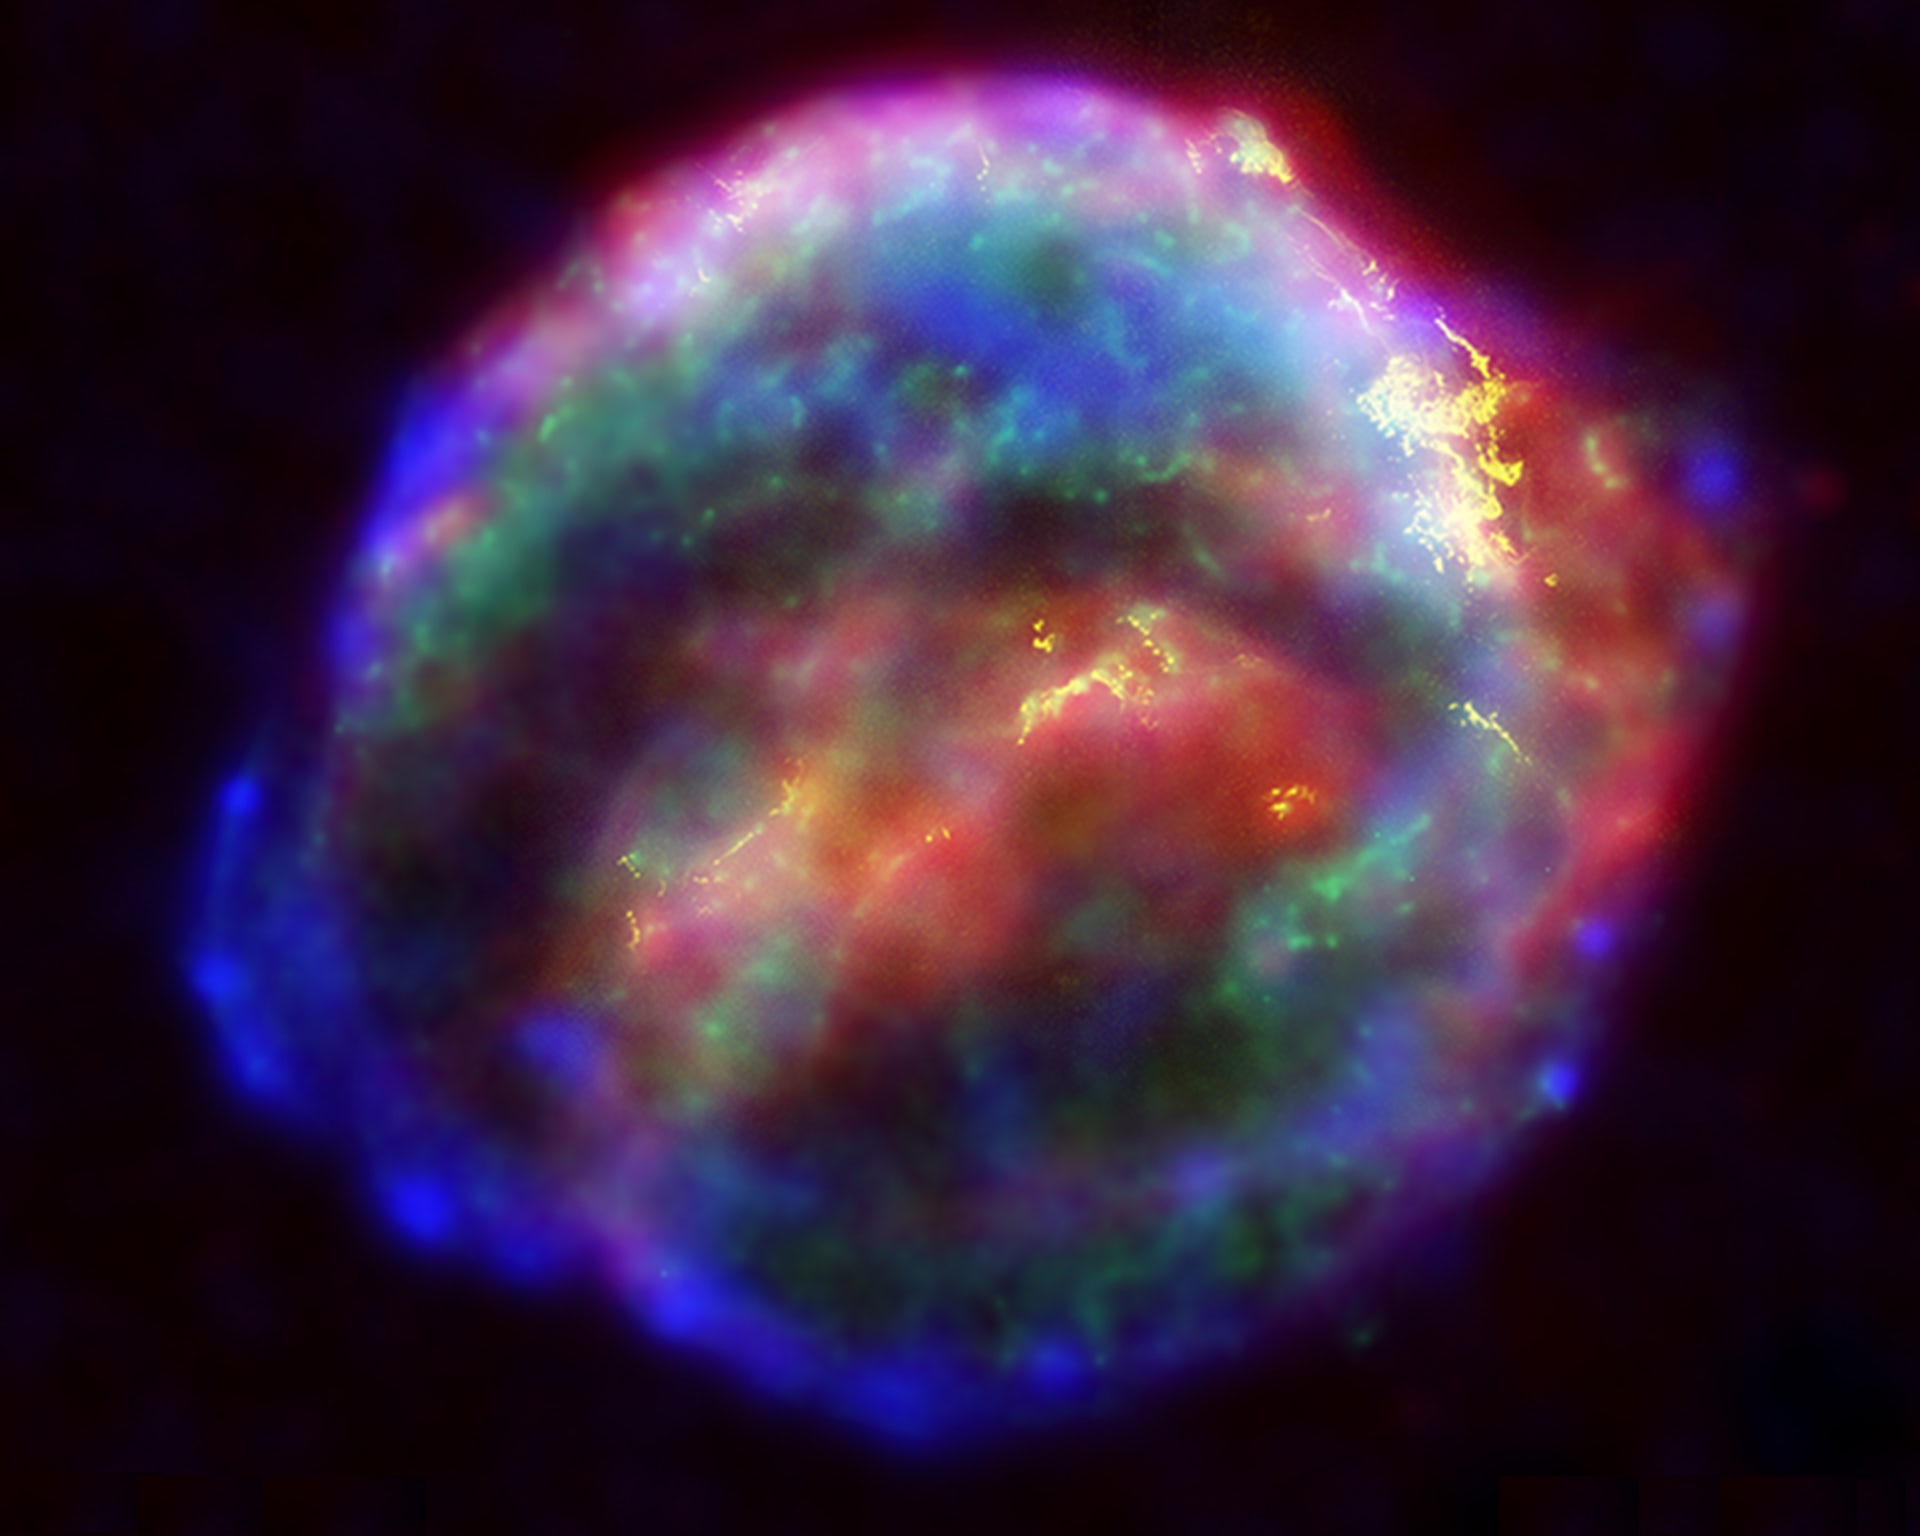 Supernova remnants of NASA's Kepler-Spitzer